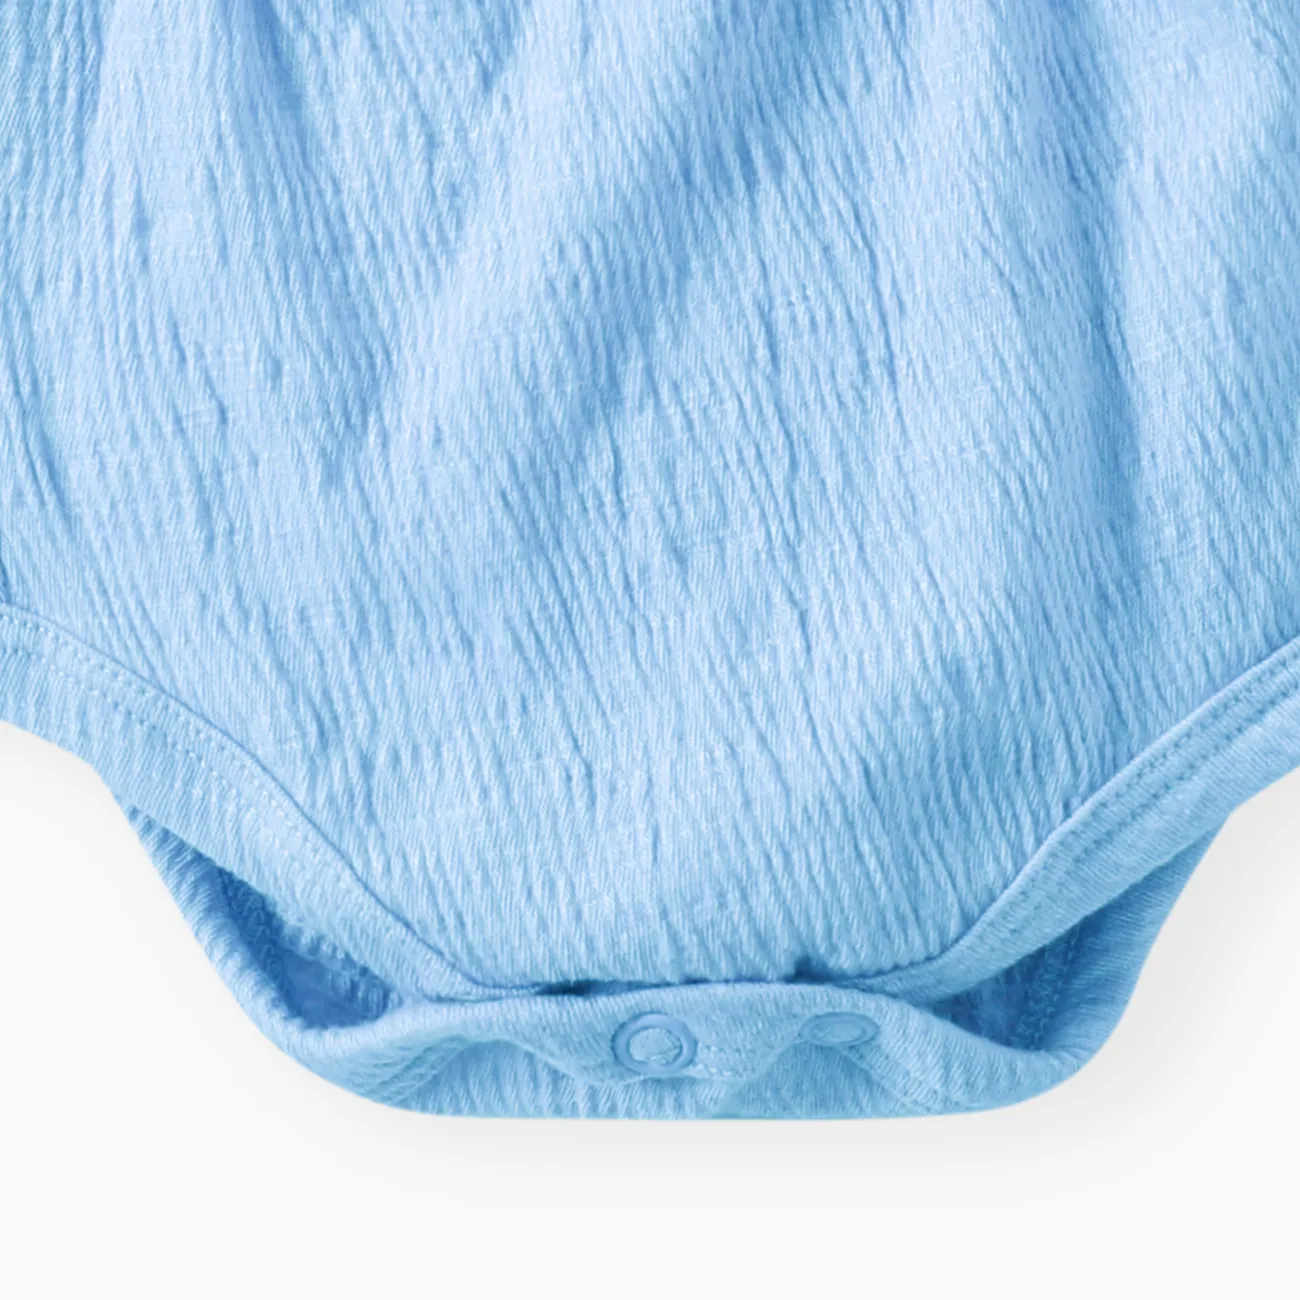 嬰兒 女 荷葉邊 甜美 無袖 連身衣 藍色 big image 1